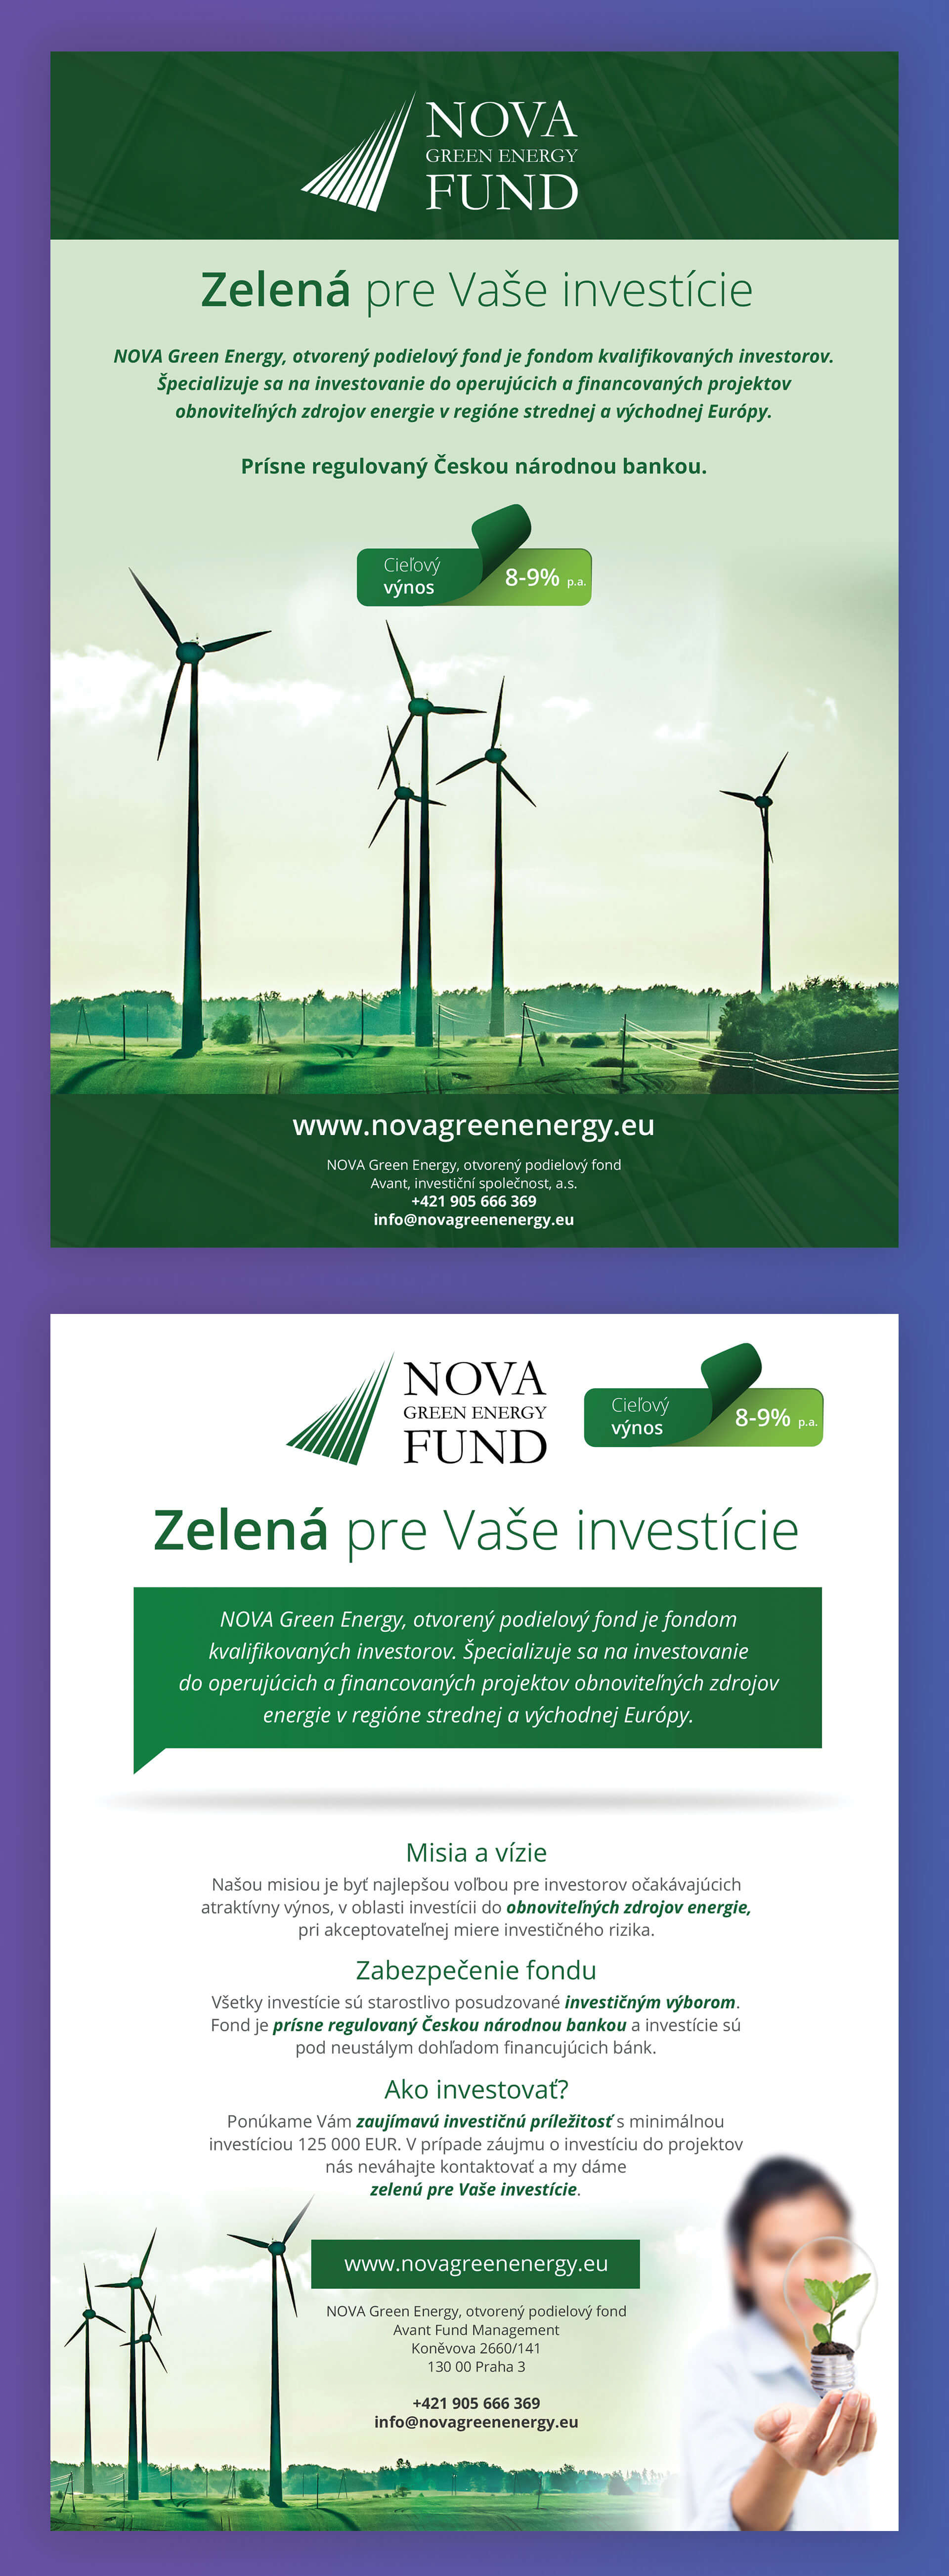 Pixelio | Referencia | Nova Energy Green Fund